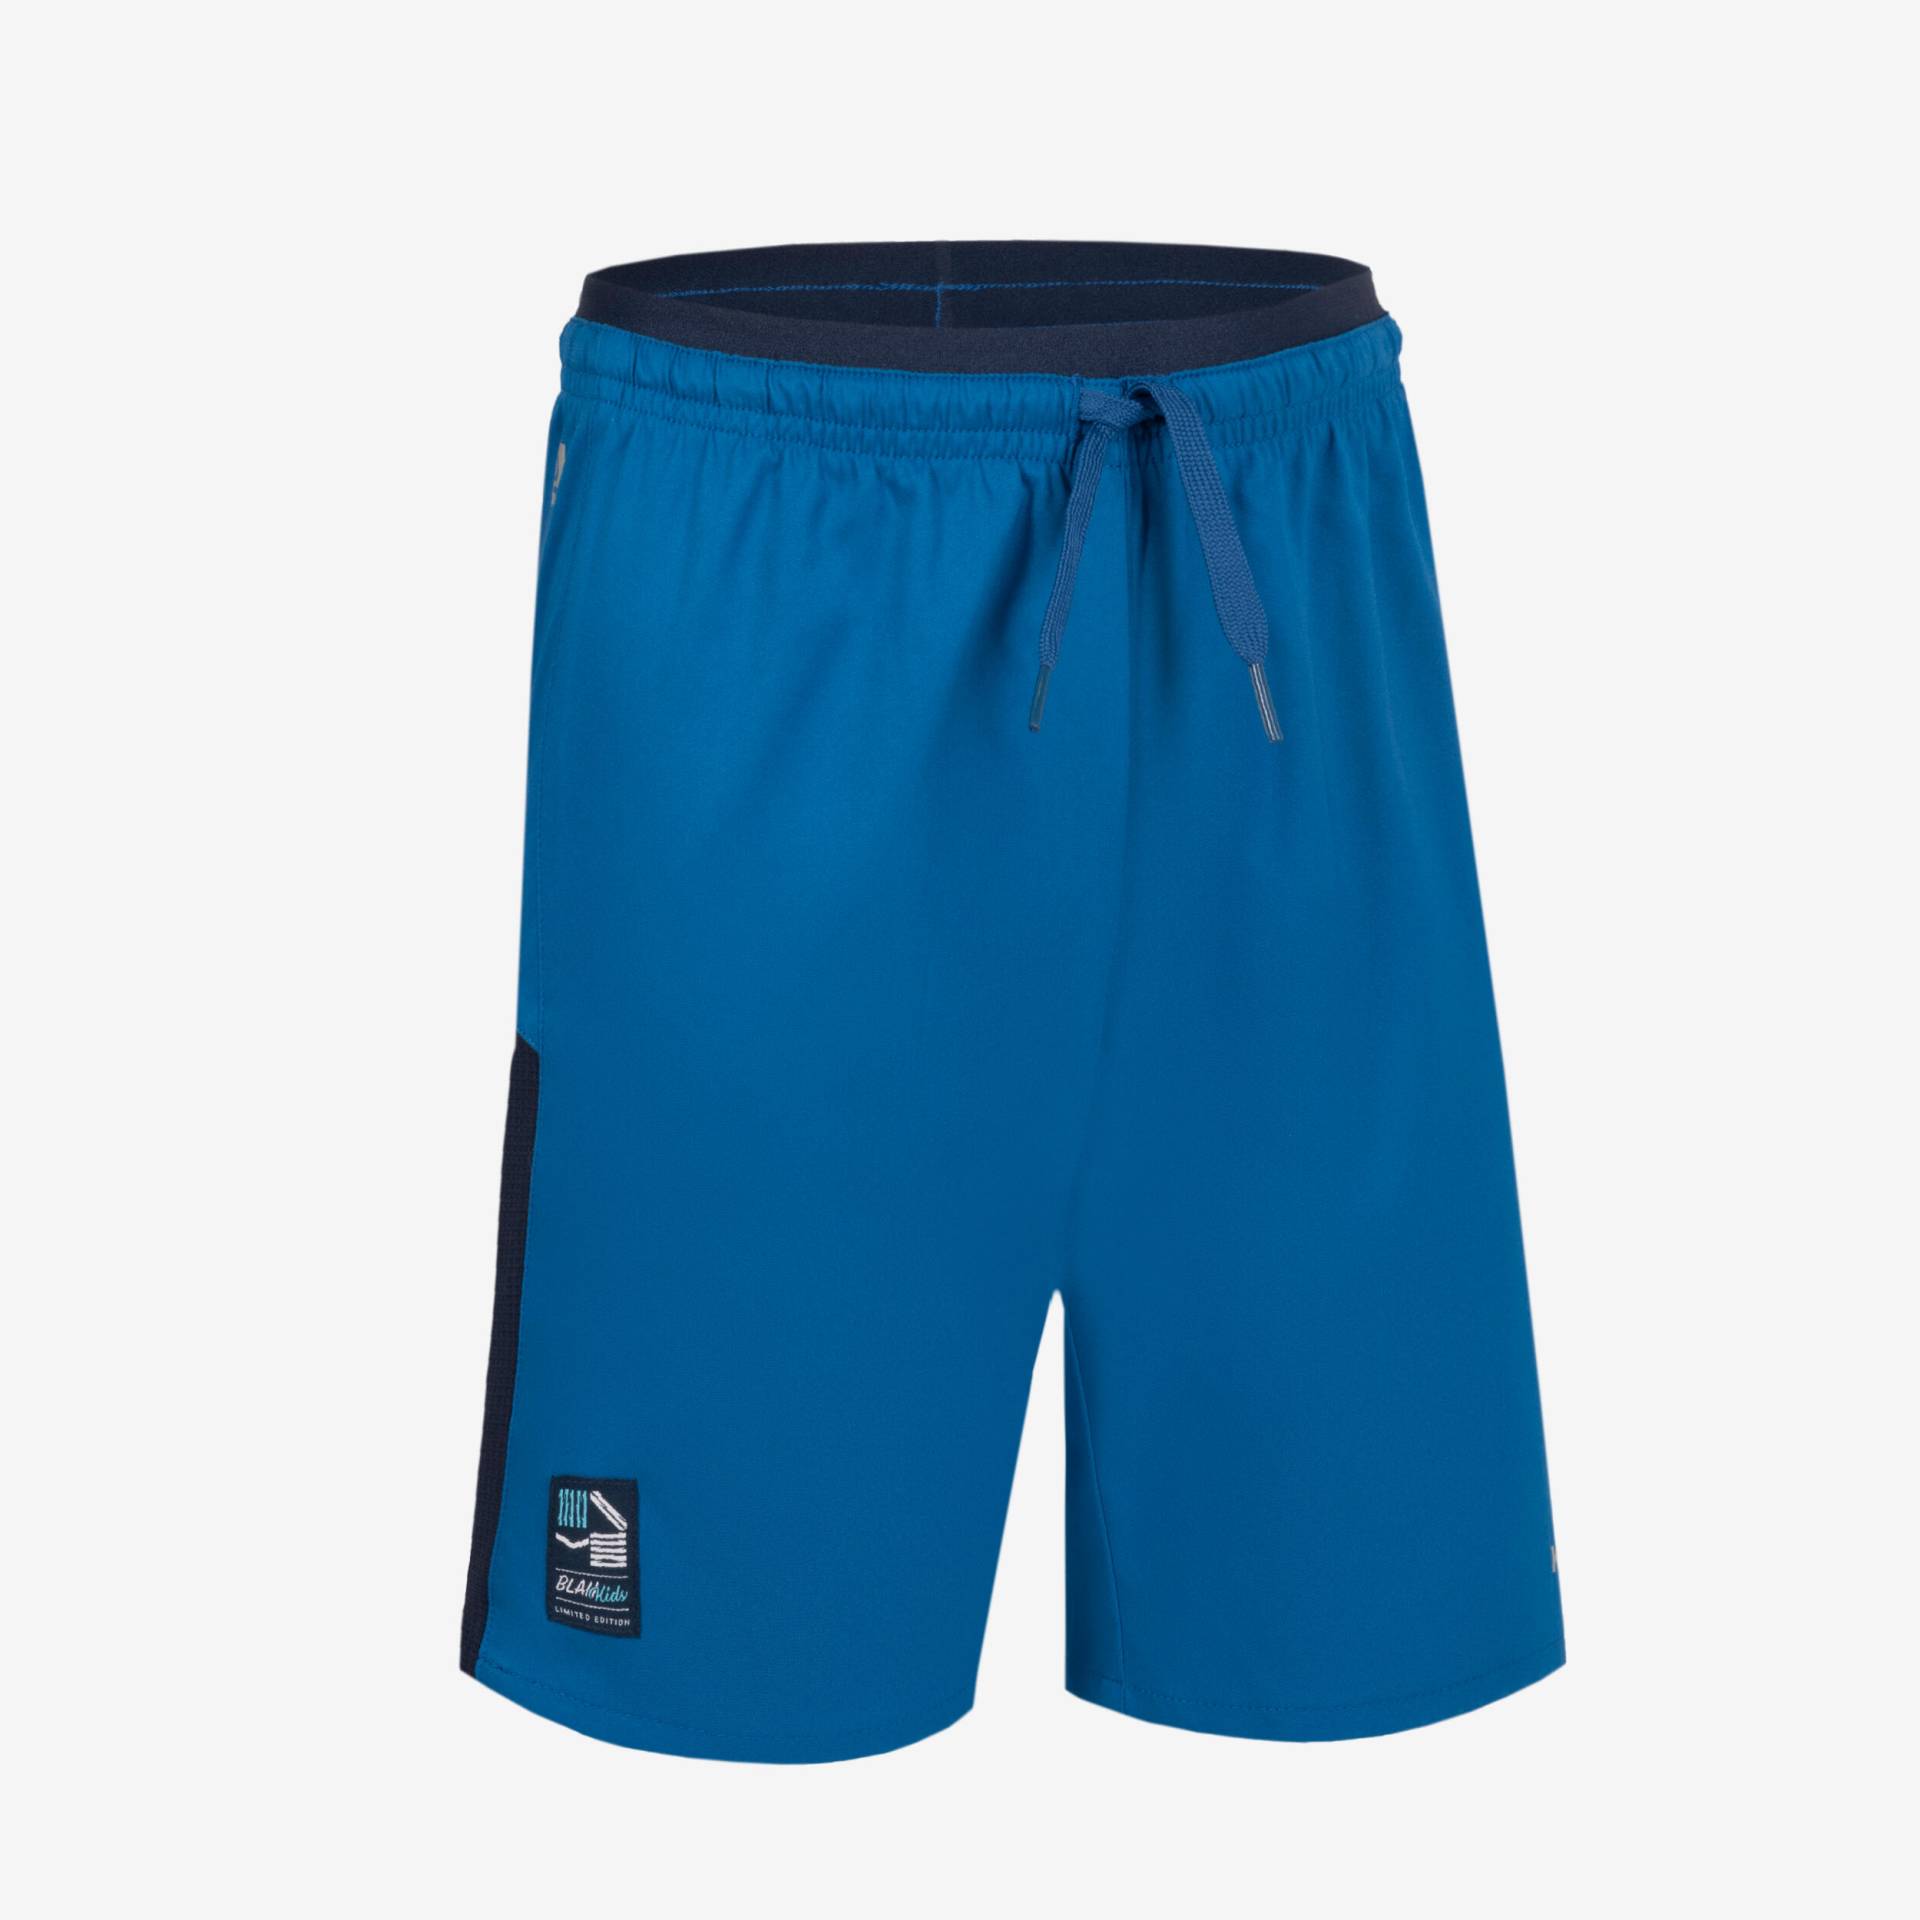 Kinder Fussball Shorts blau/marineblau von KIPSTA